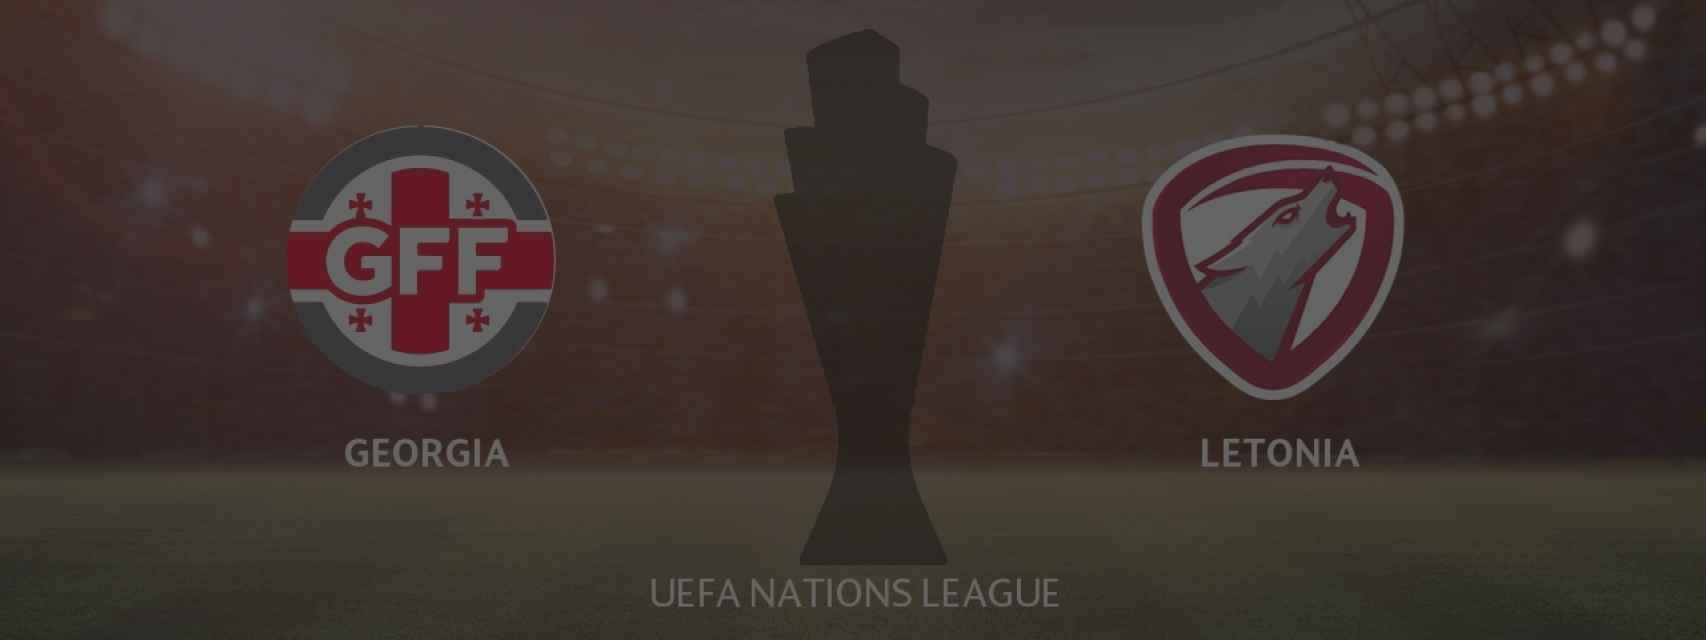 Georgina - Letonia, UEFA Nations League